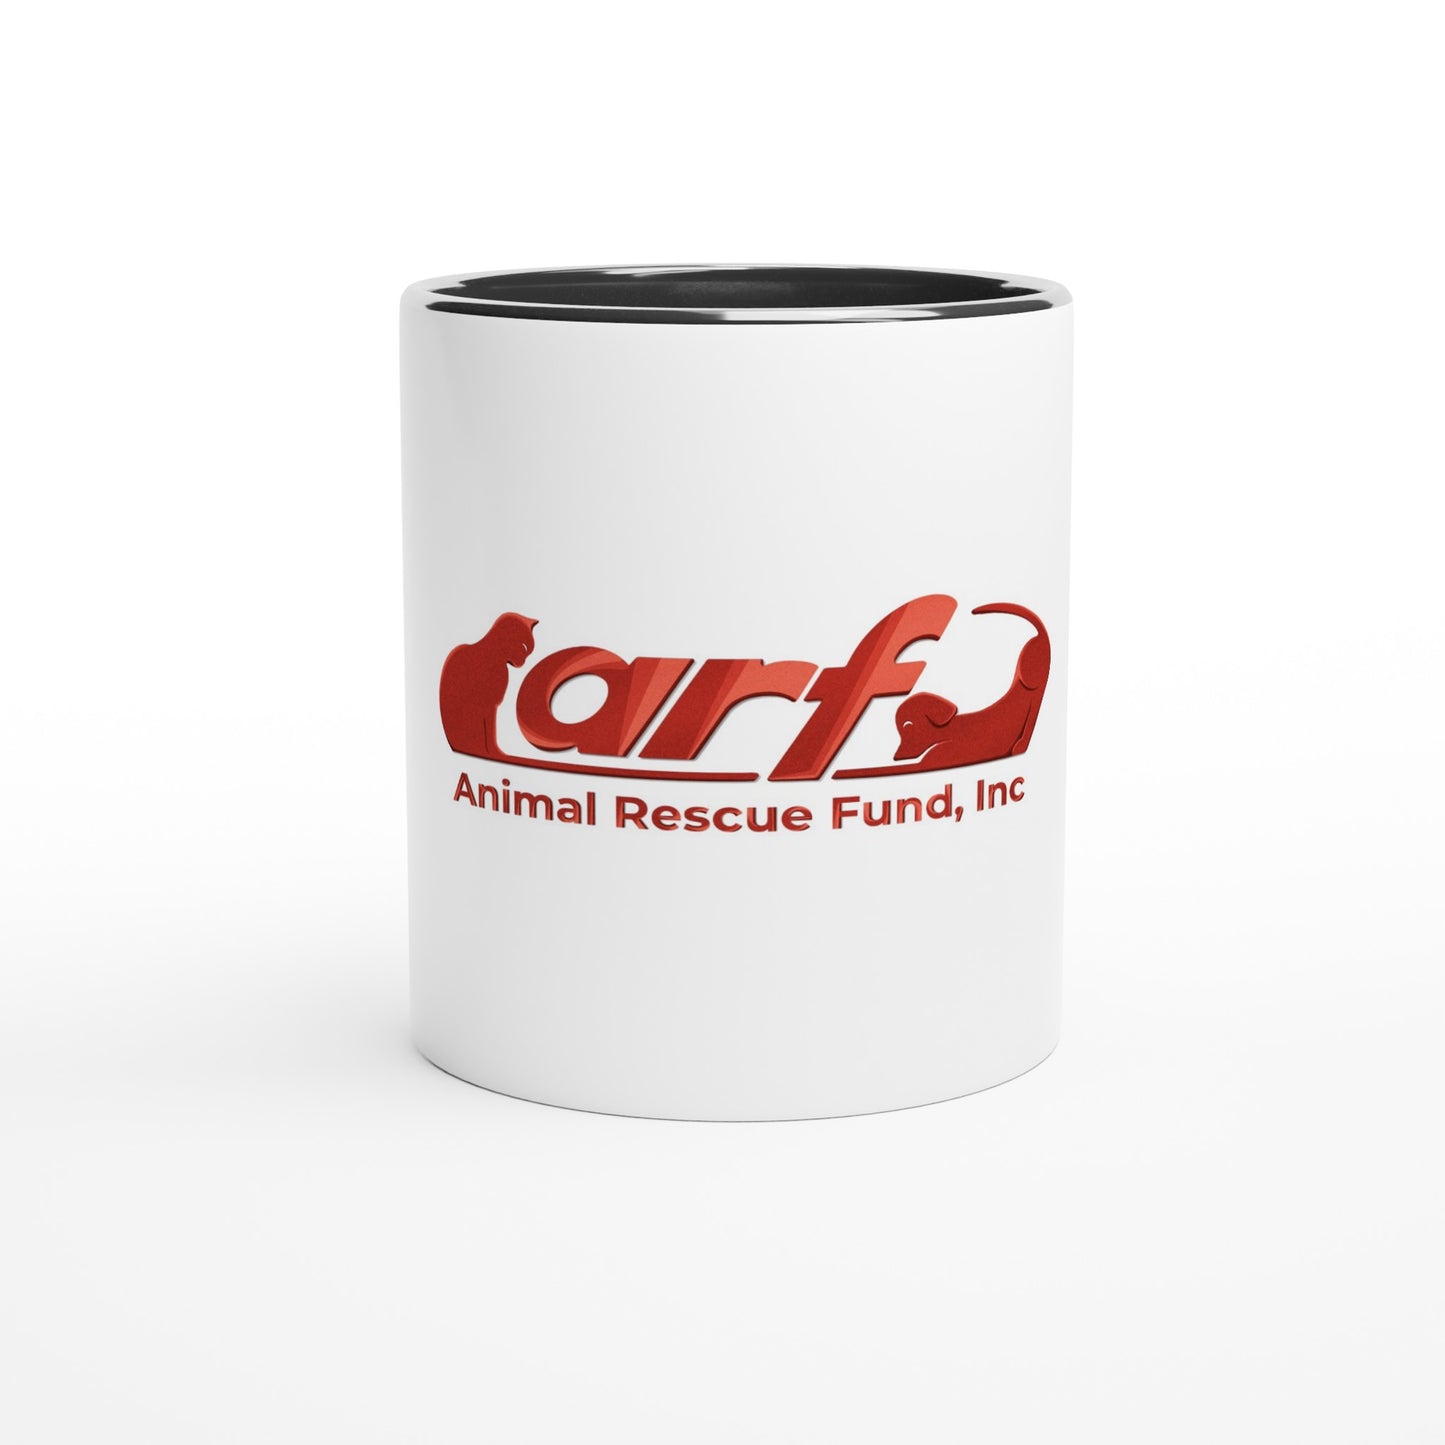 ARF: Animal Rescue Fund - White 11oz Ceramic Mug with Color Inside